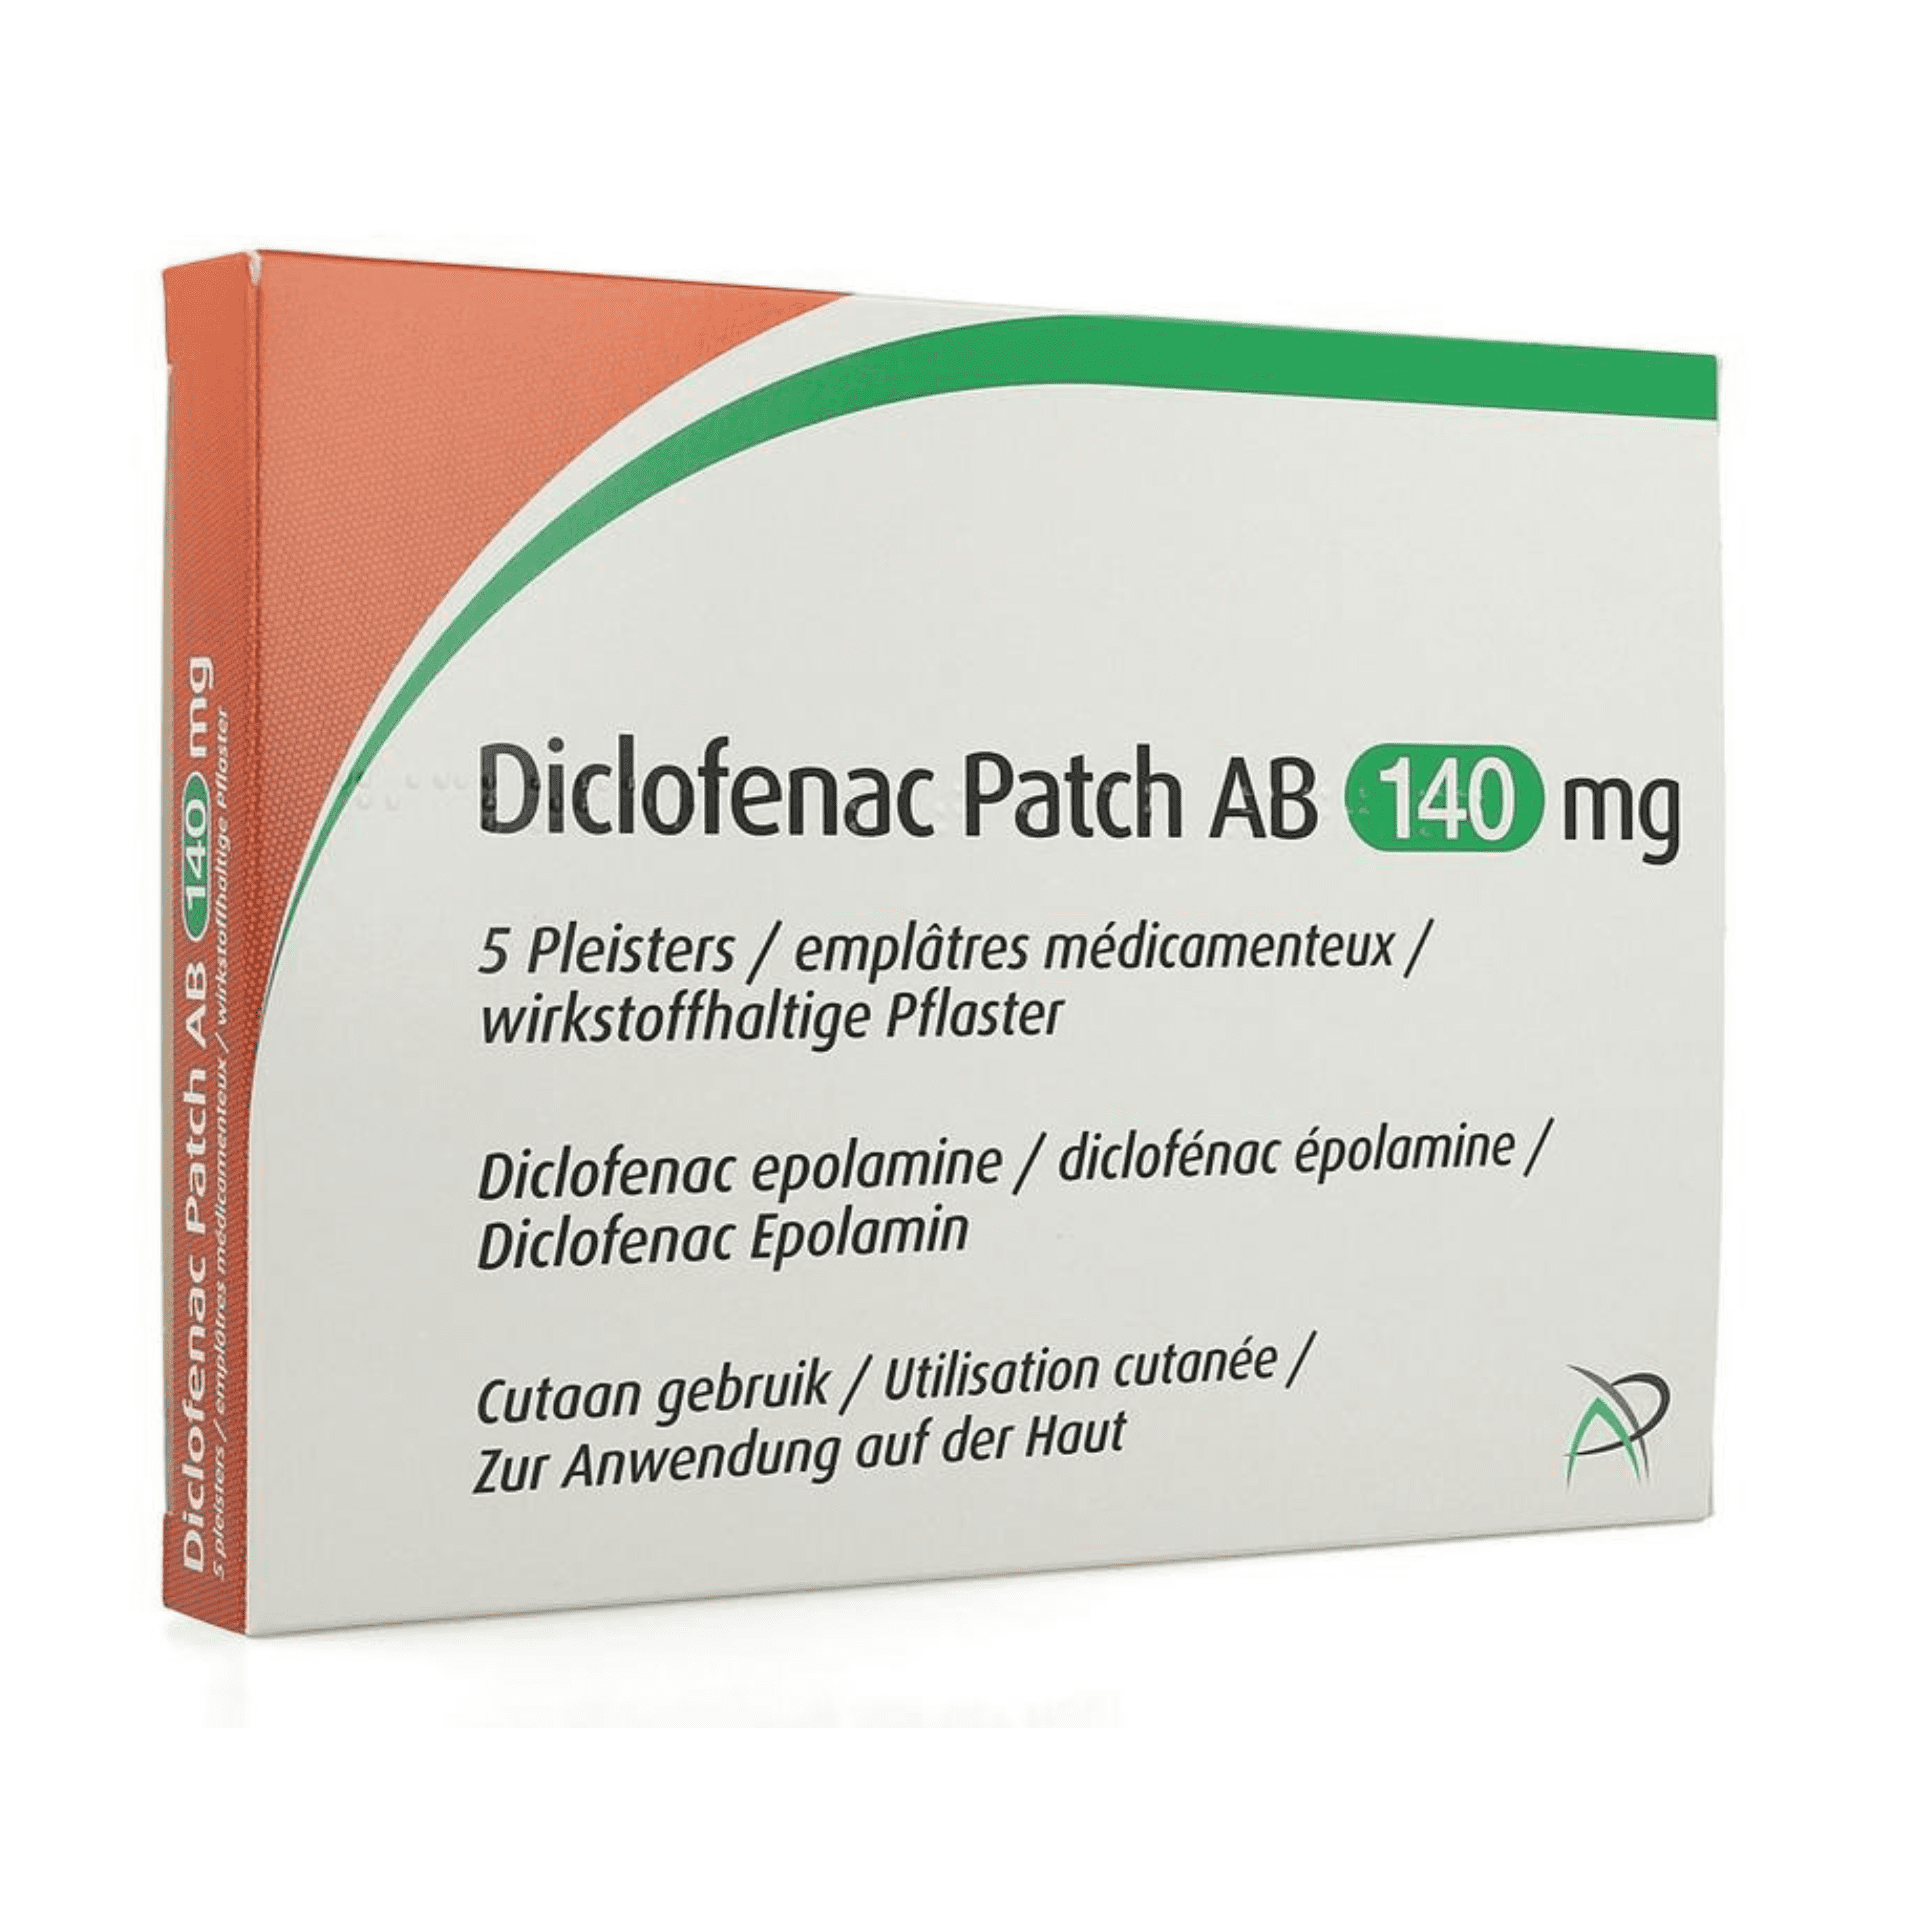 Diclofenac Patch Ab 140mg Emplatre 5